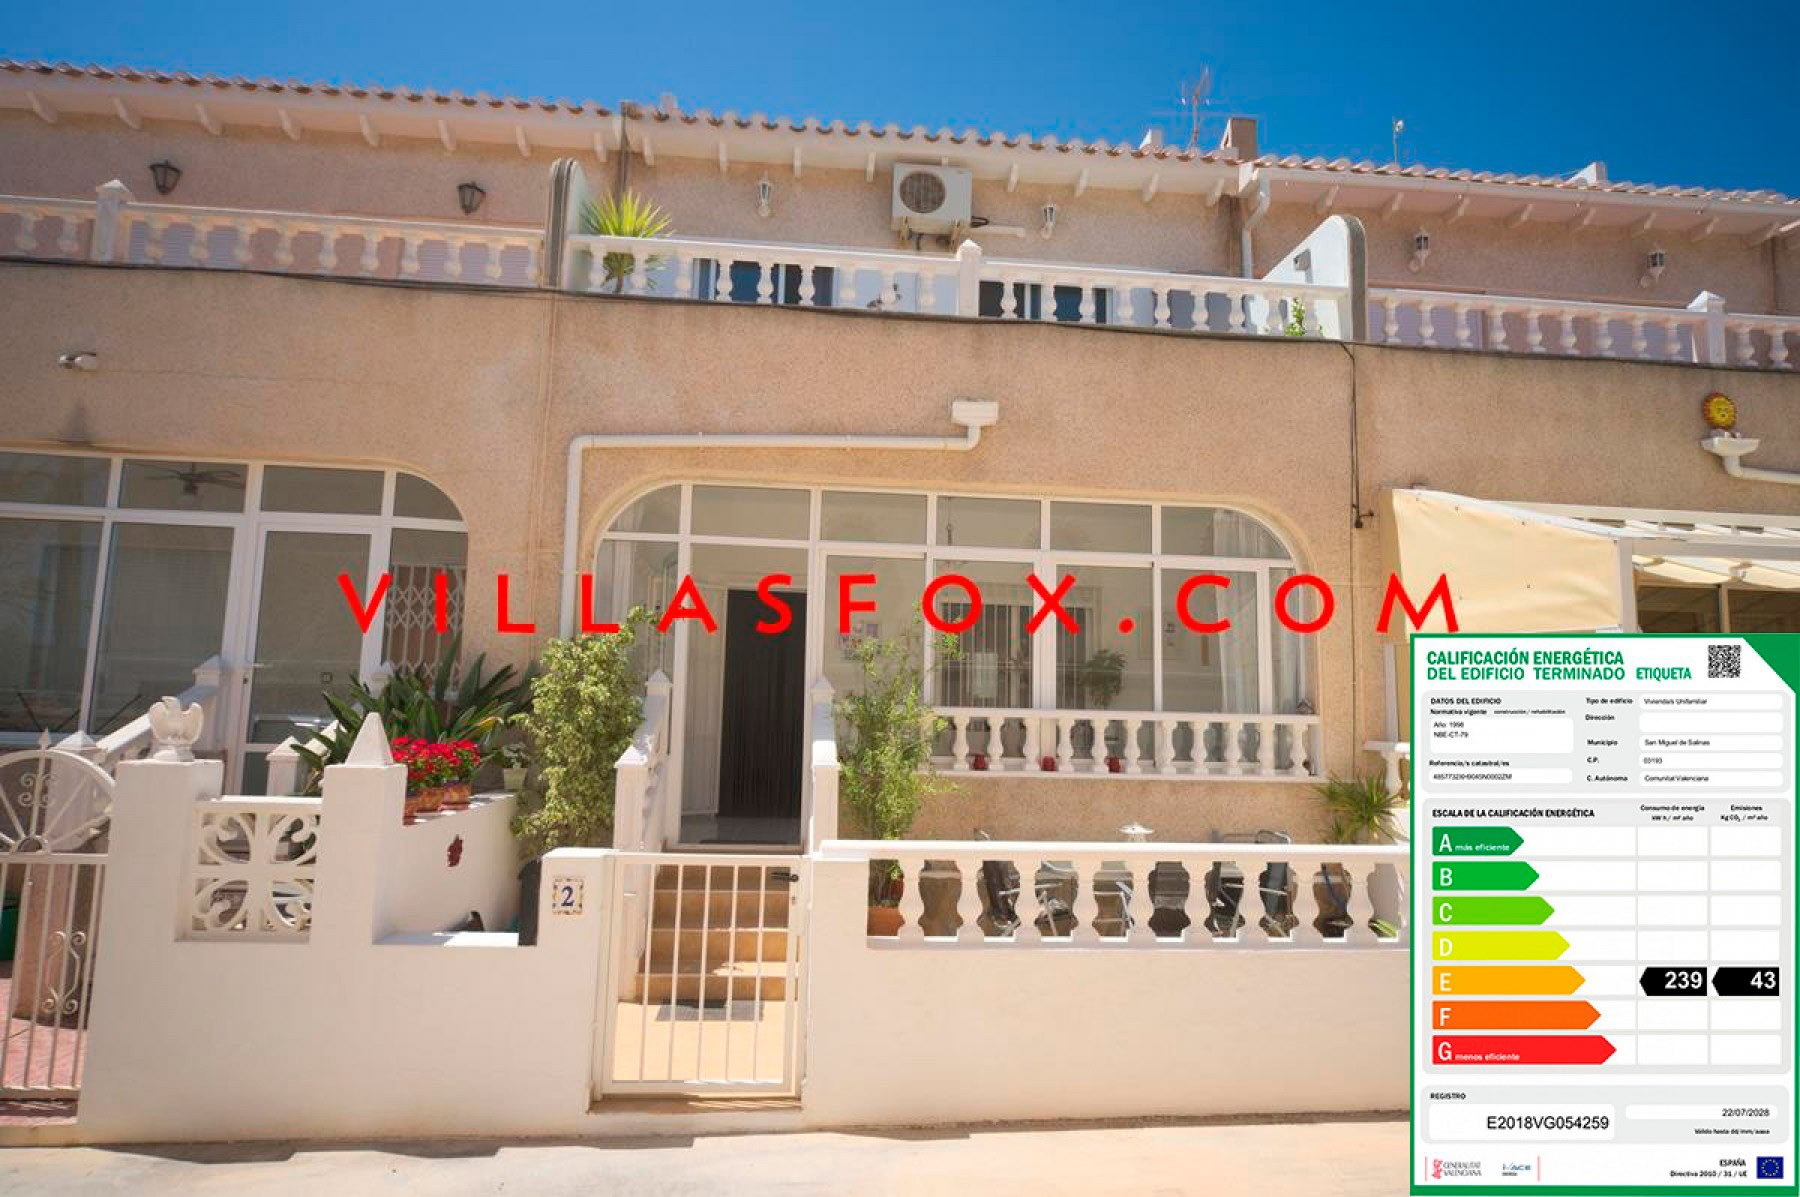 2 San Miguel de Salinas Townhouse em Balcn de la Costa Blanca by Villas Fox melhores agentes imobiliários 610fdbdf4a34f